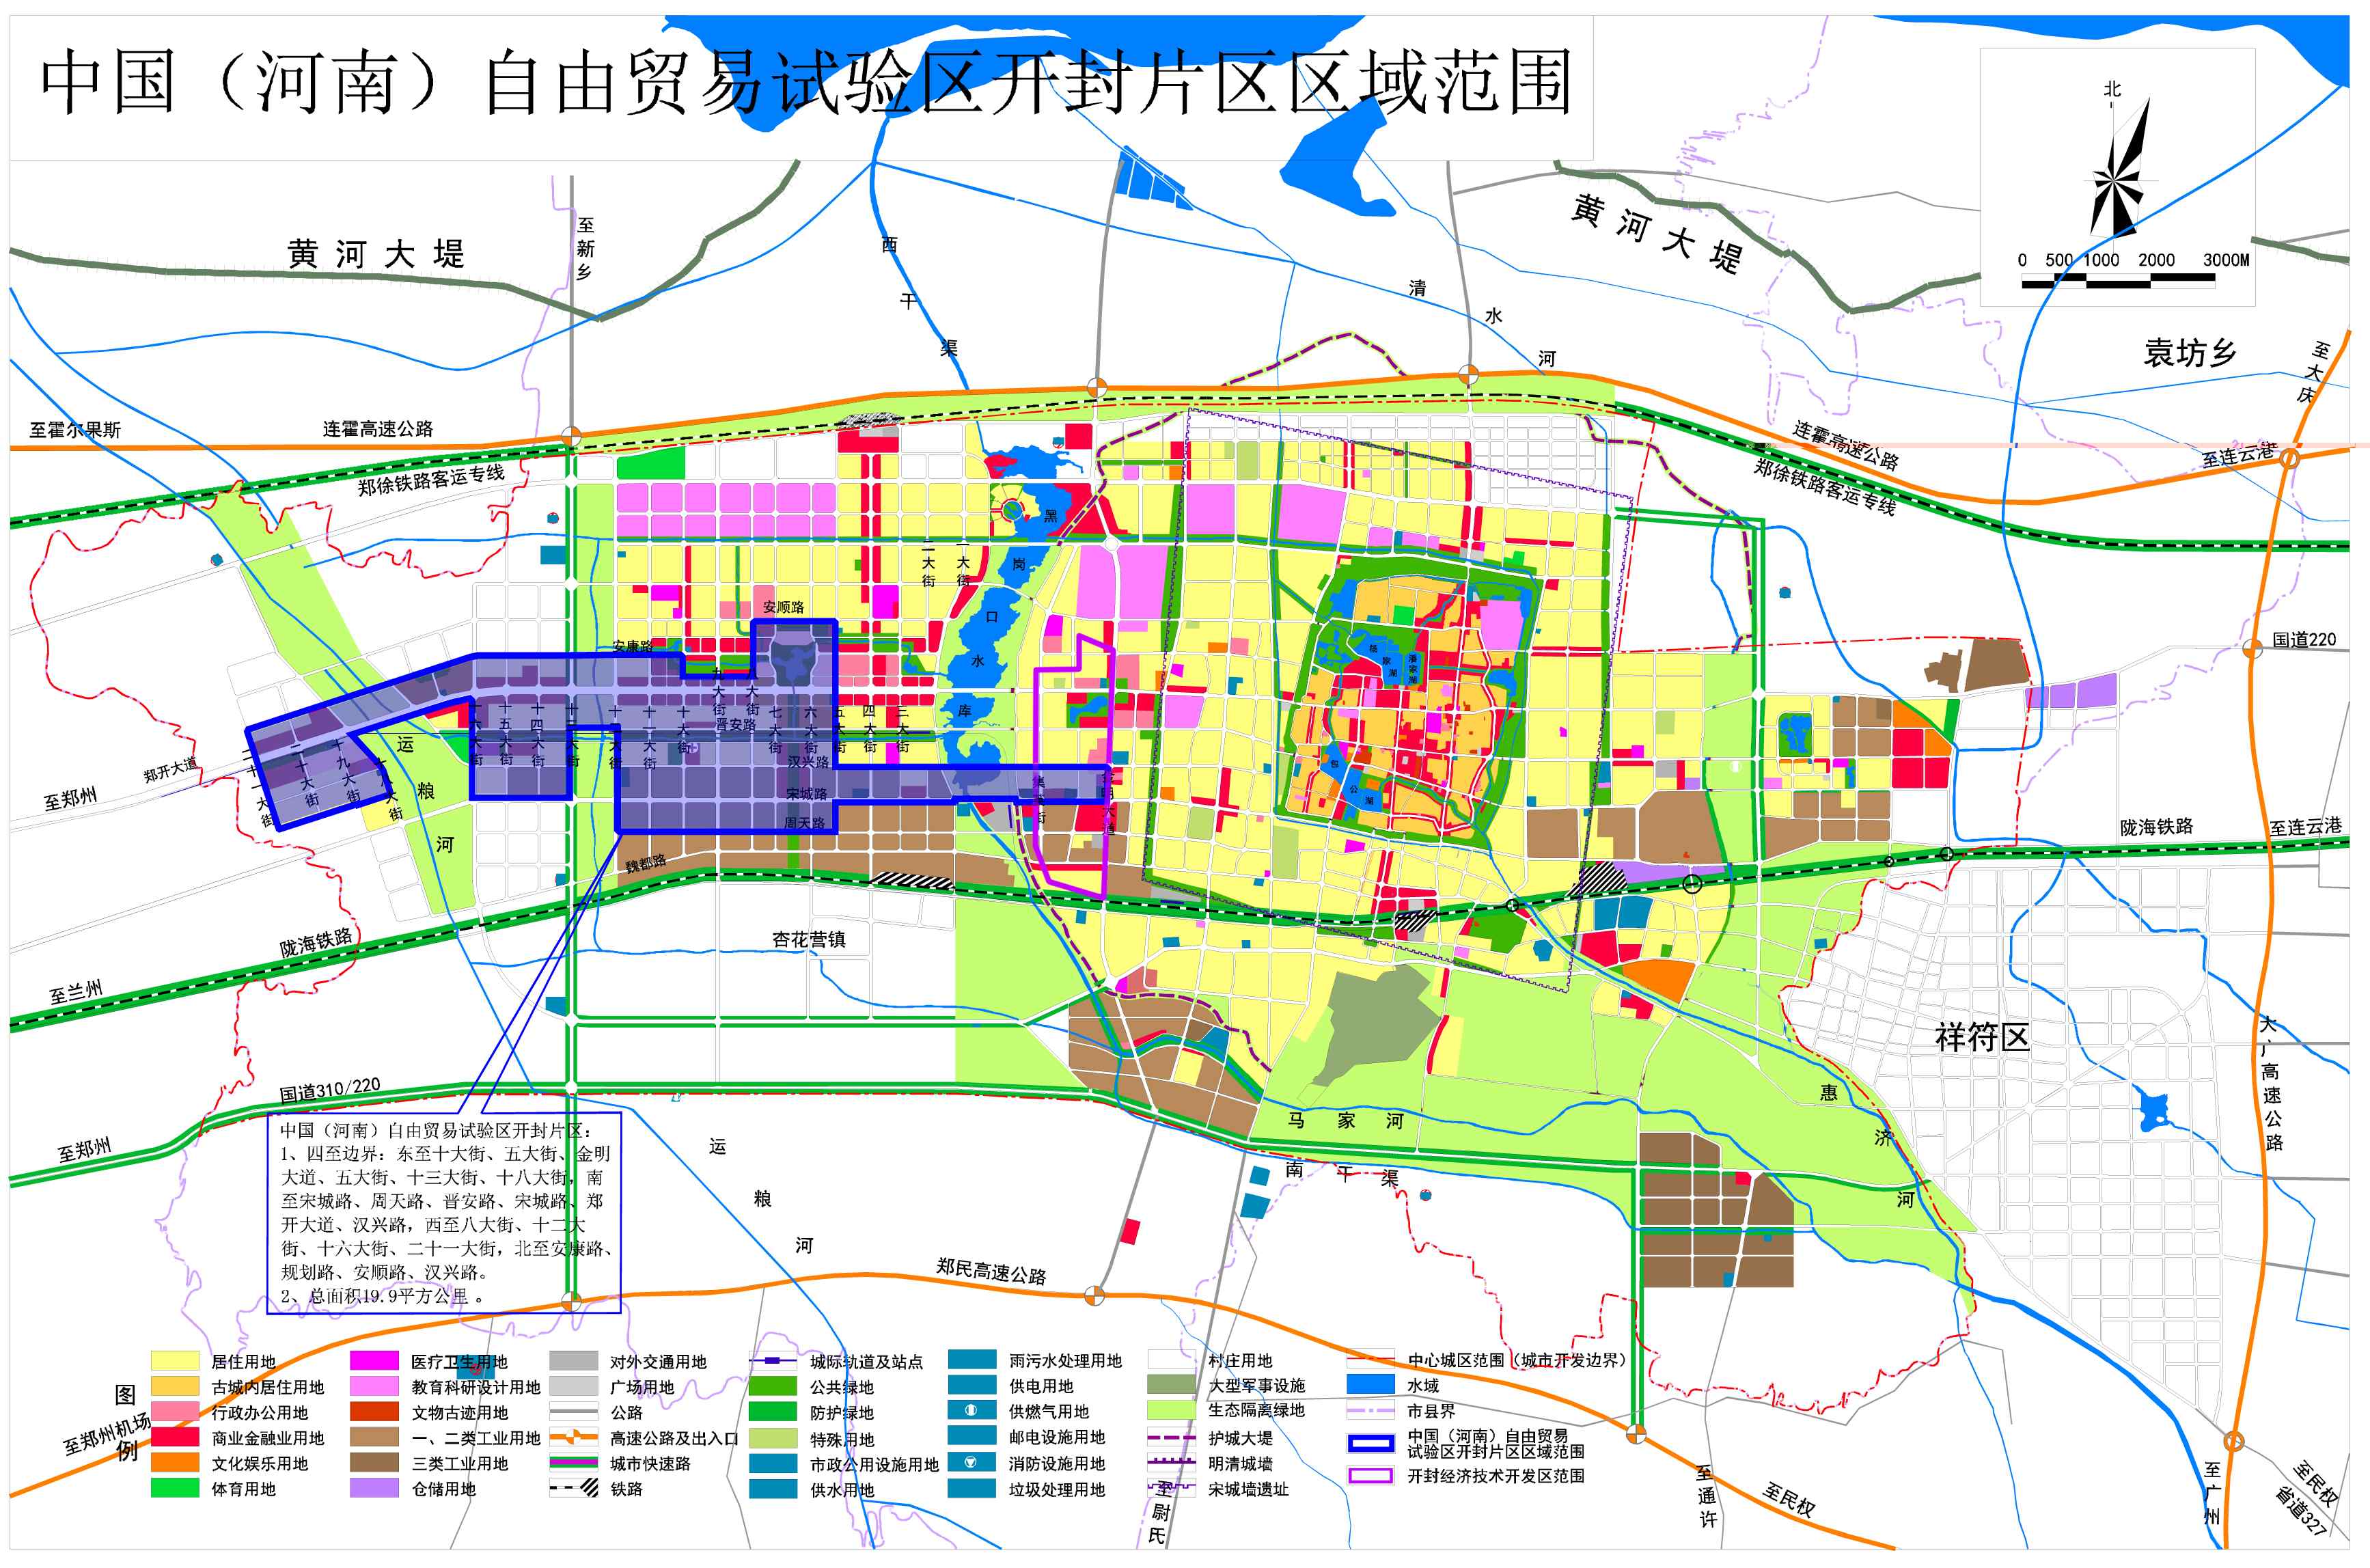 河南自贸区开封片区范围及功能定位发展目标